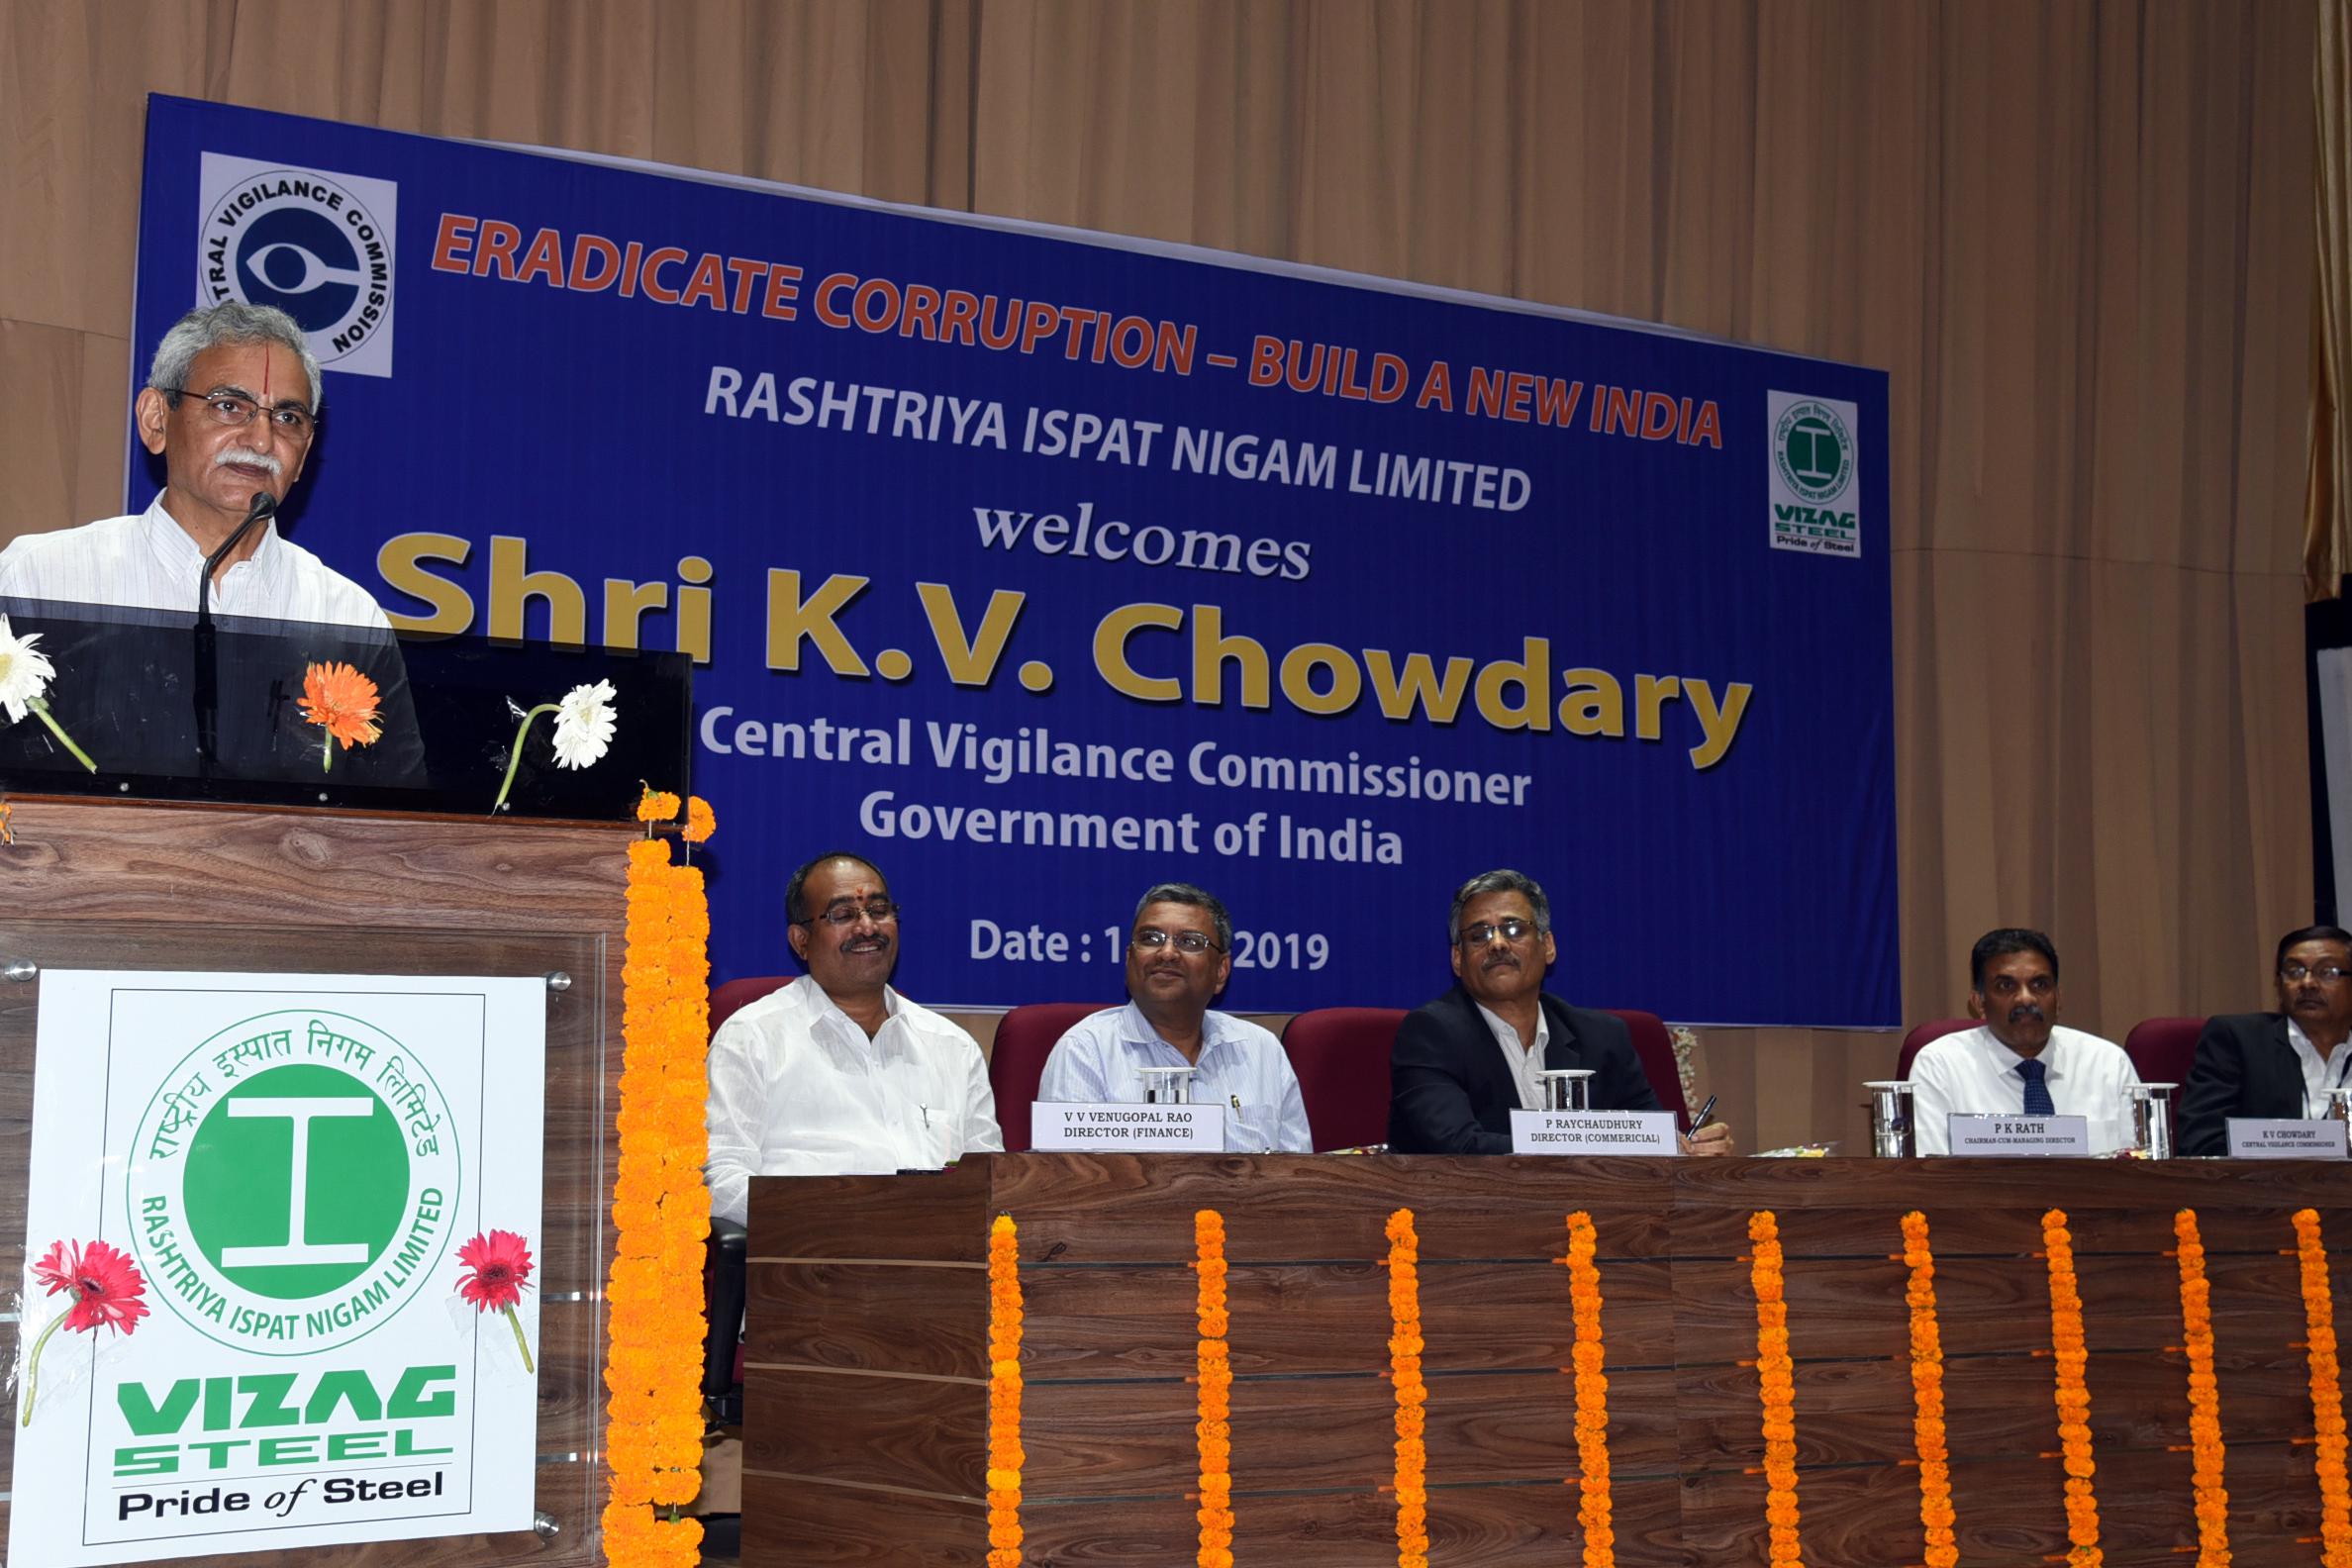 Organizations lack Integrity will perish:  Sri KV Chowdary, CVC